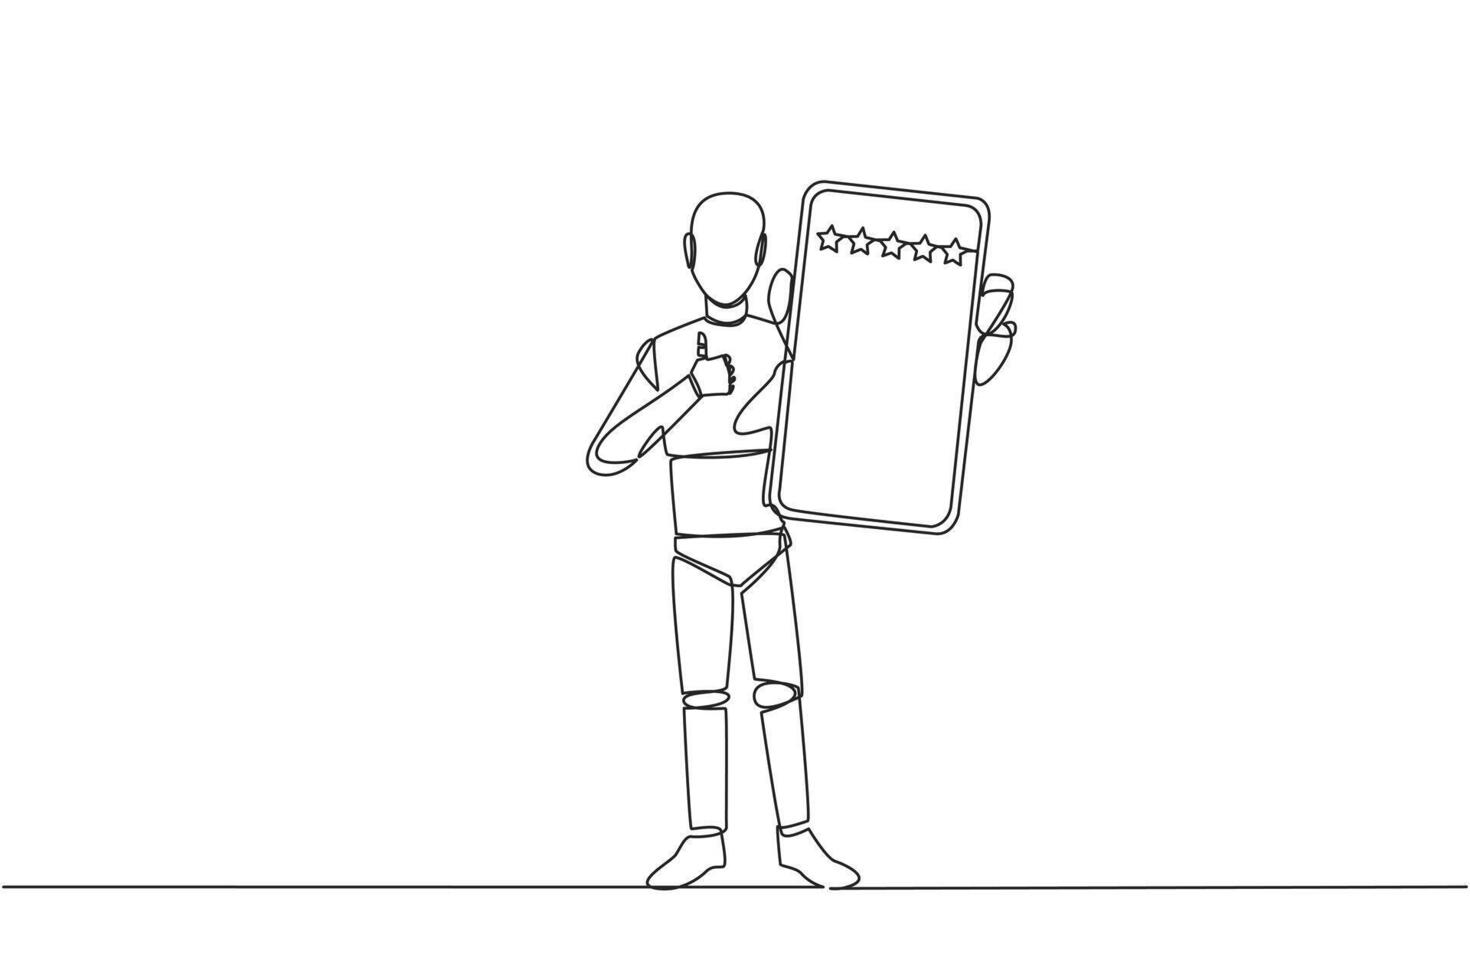 Single kontinuierlich Linie Zeichnung Roboter Stehen halten Smartphone zeigen Bildschirm zu das Vorderseite. geben Bewertung von 5 Sterne zu online Verkäufer. zufrieden Kunde. Zukunft Technologie. einer Linie Design Vektor